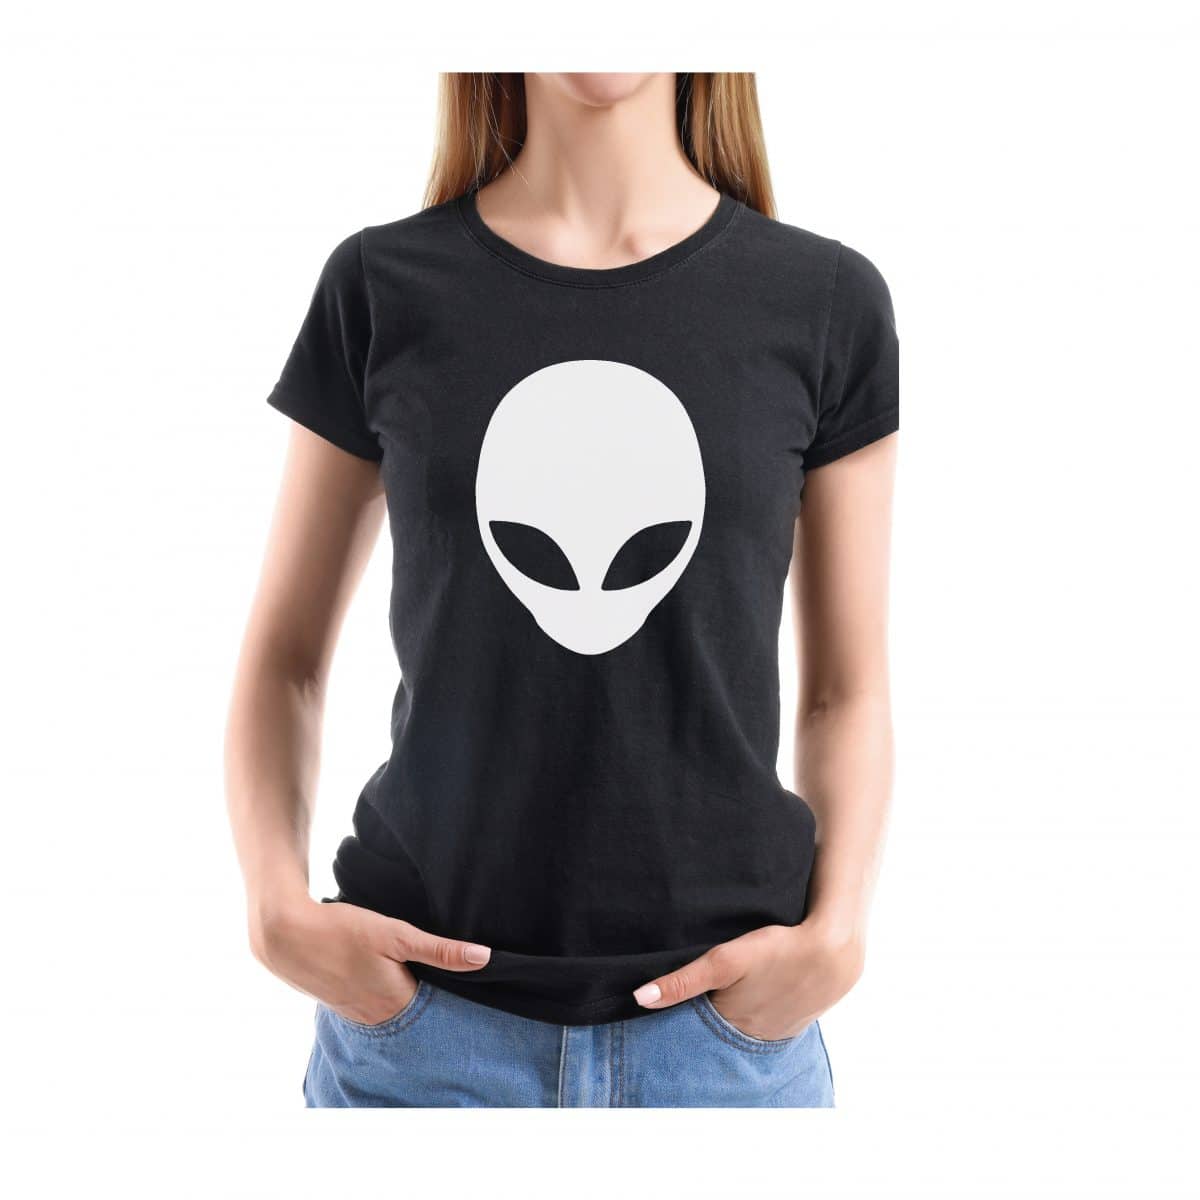 Tee Shirt Black GRAViiTY - Alien head